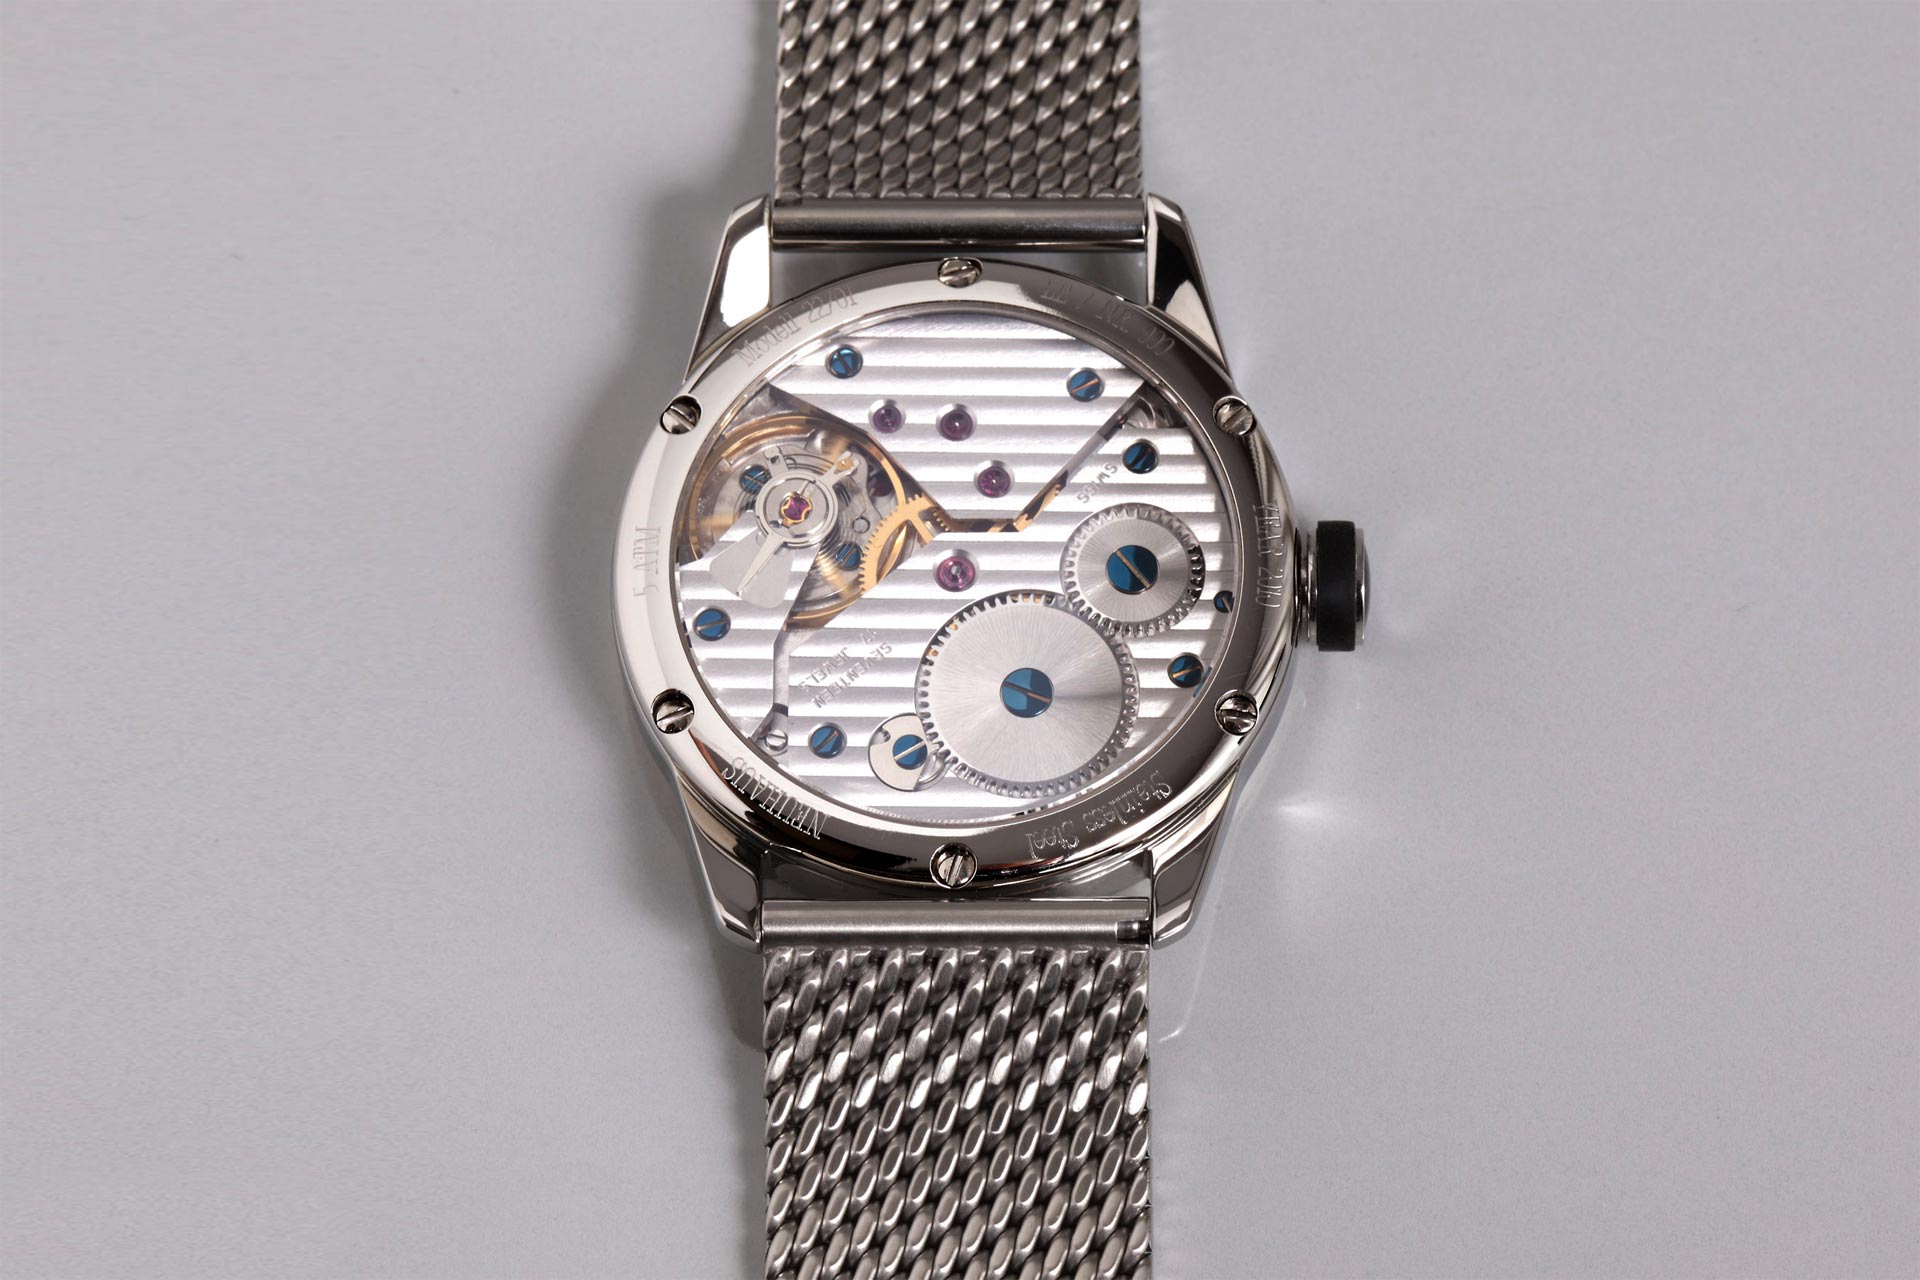 Einzeigeruhr von NEUHAUS Timepieces, Model JANUS DoubleSpeed, Glasboden Werksseite mobil